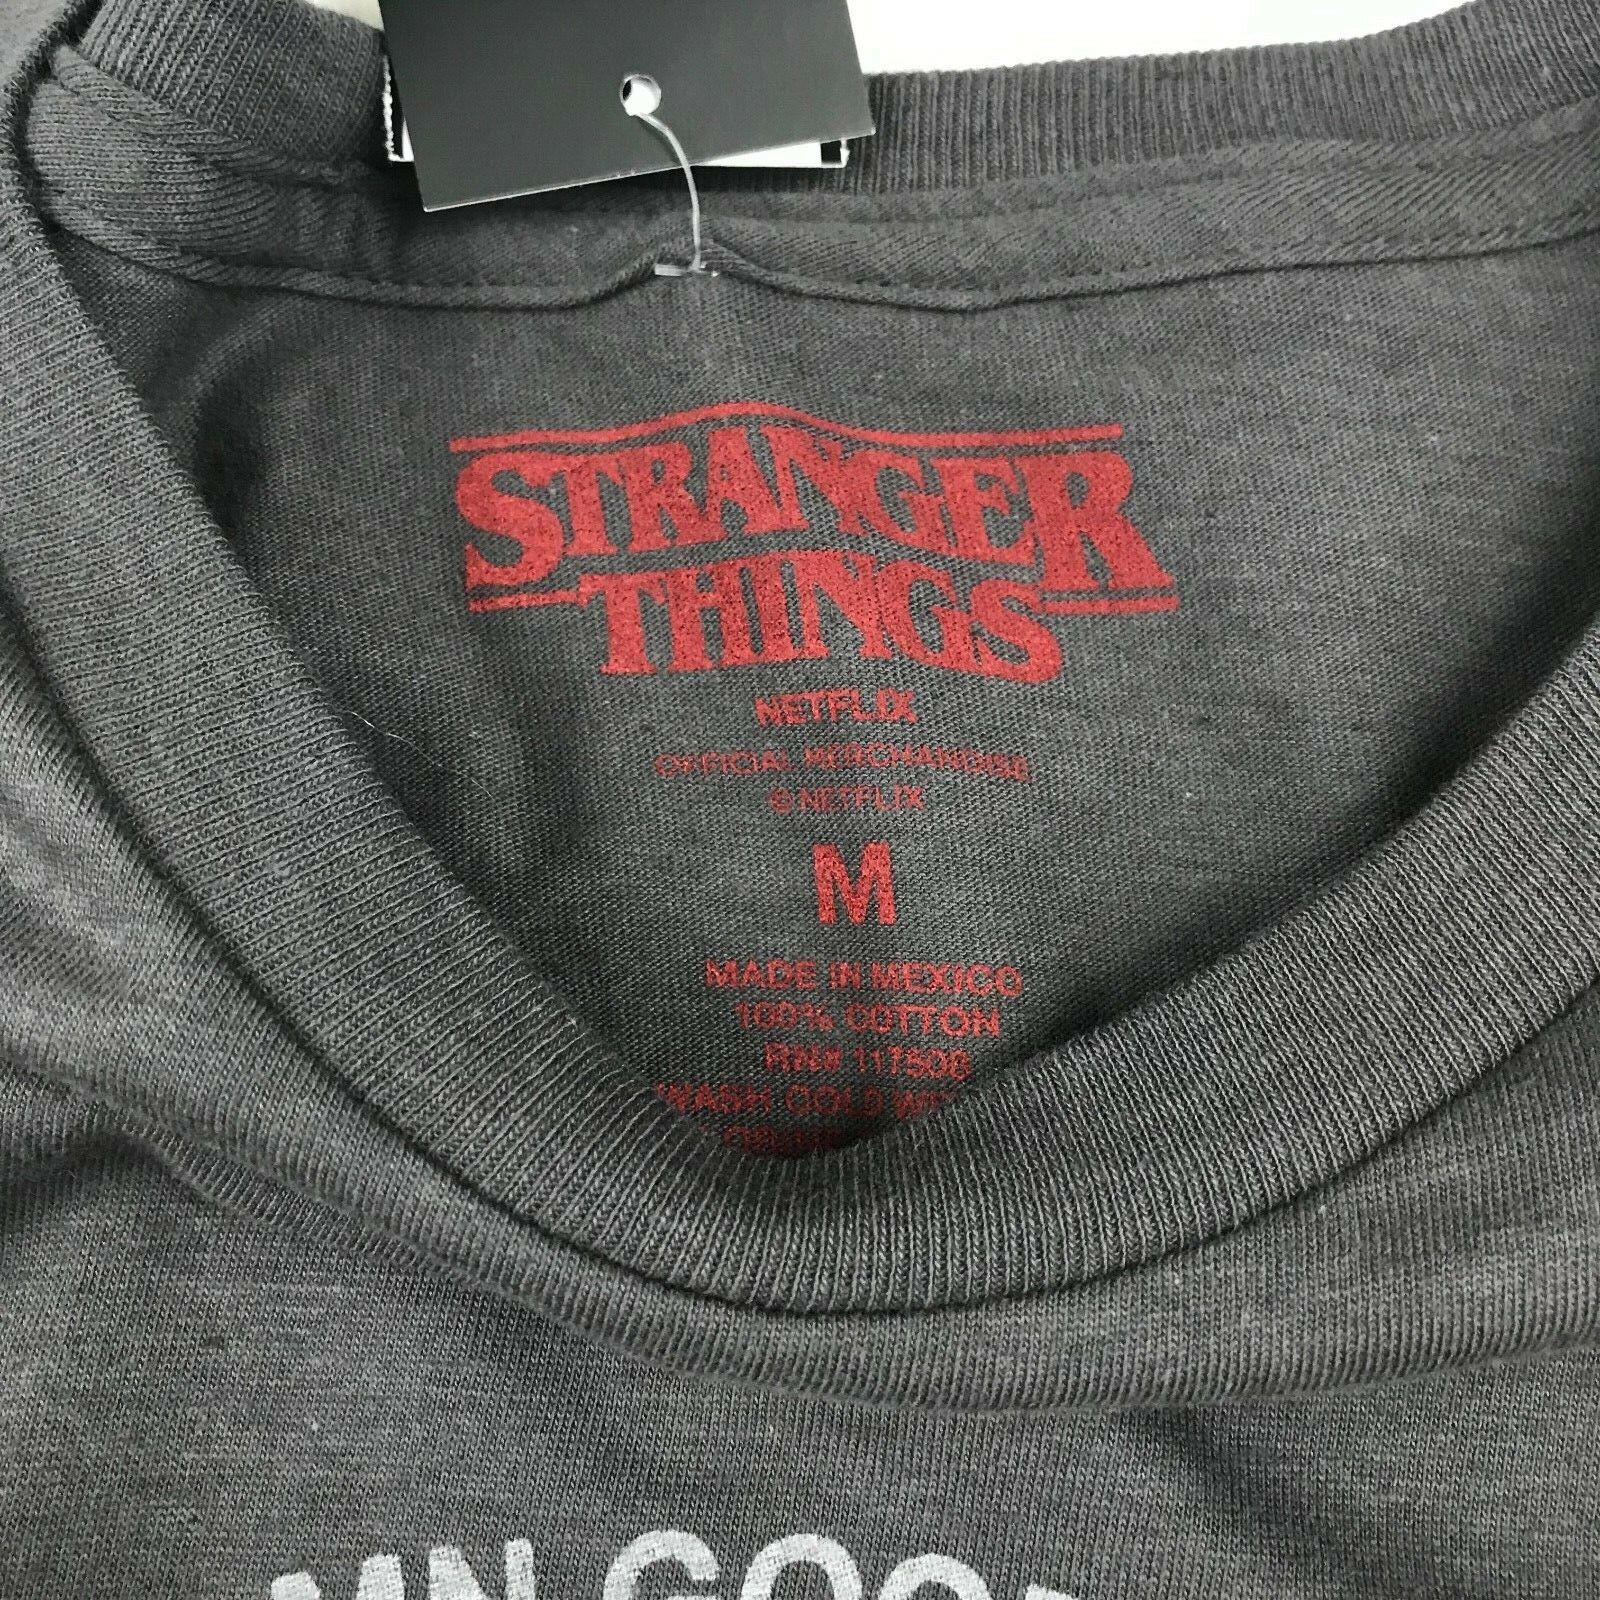 Stranger Things Netflix Steve Harrington Babysitter T-Shirt Size M, L ...